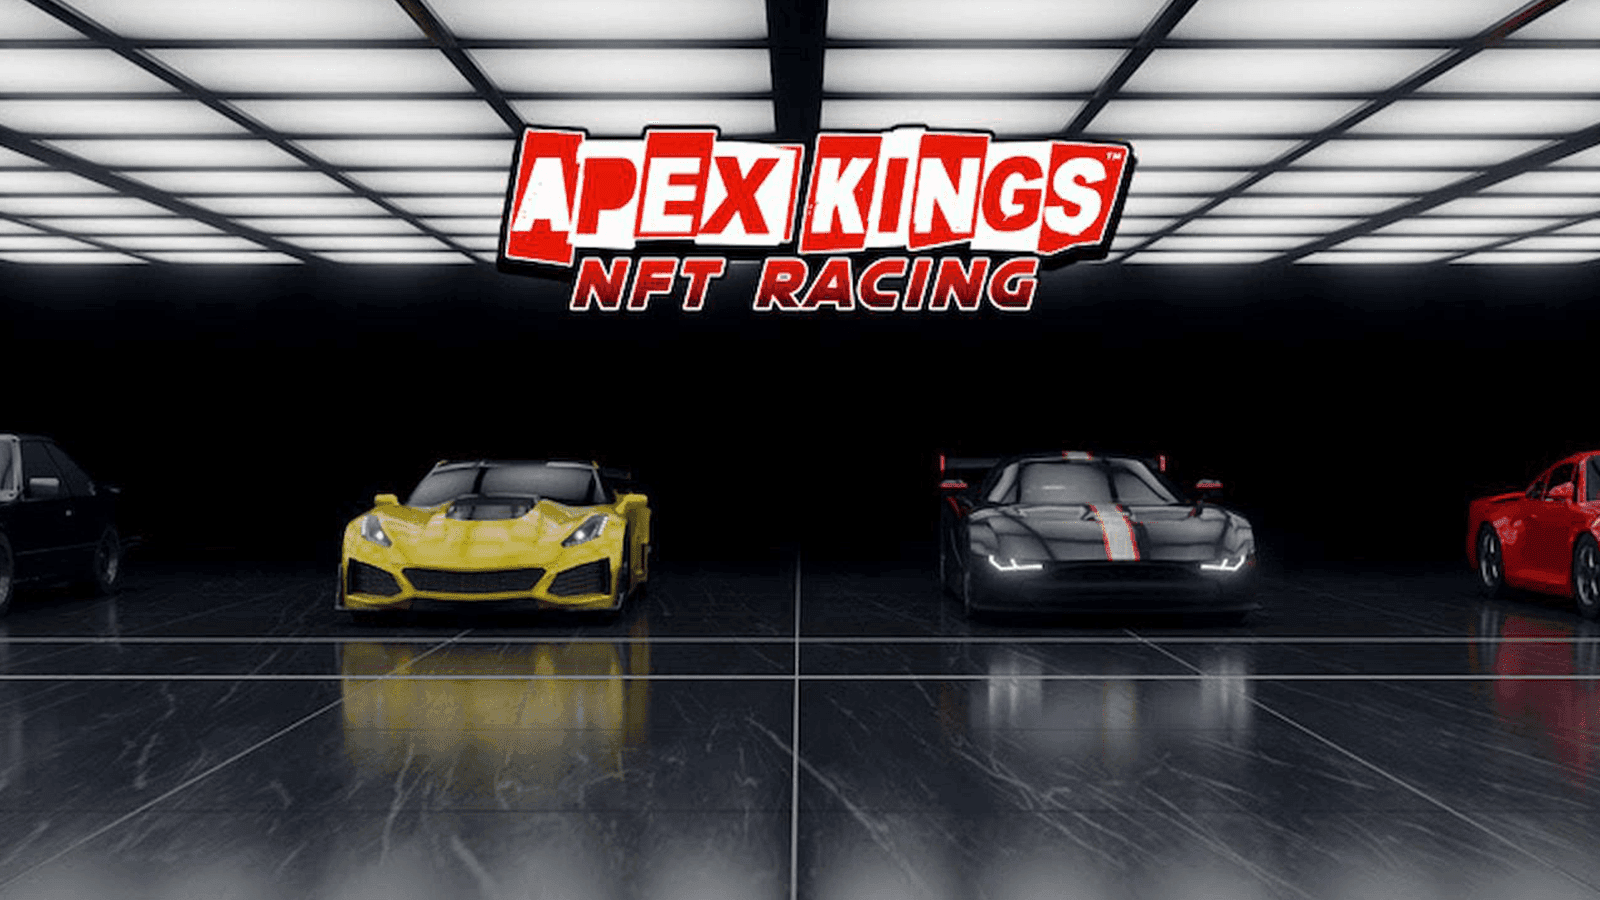 Apex Kings NFT Yarışı - Oyun İncelemesi